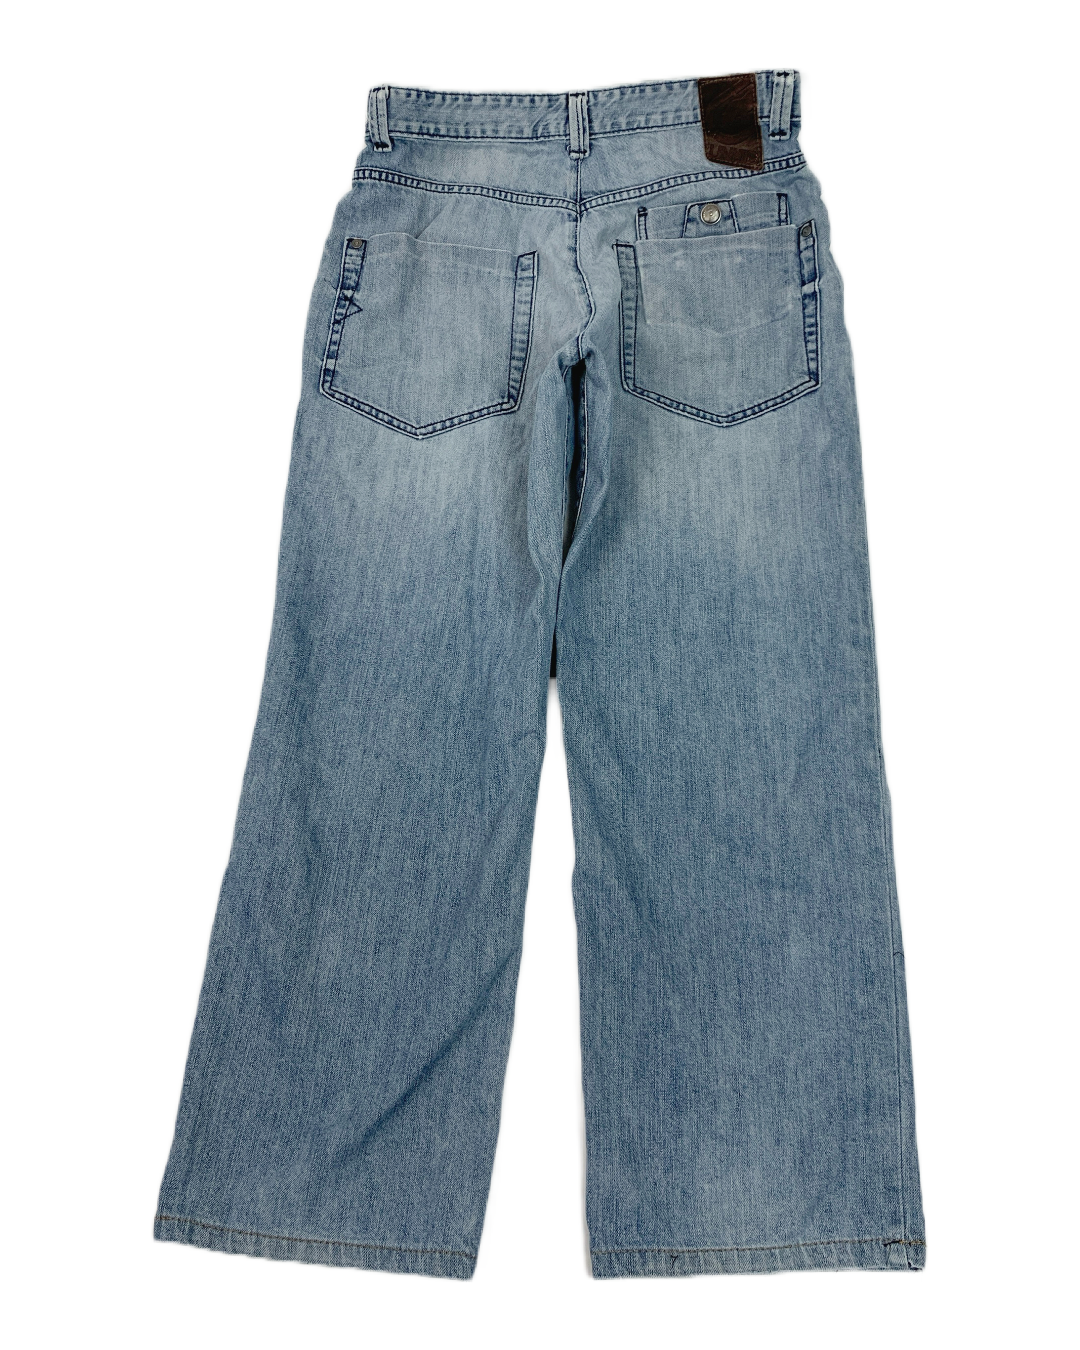 Ecko Untld Vintage Y2K Jeans - 34